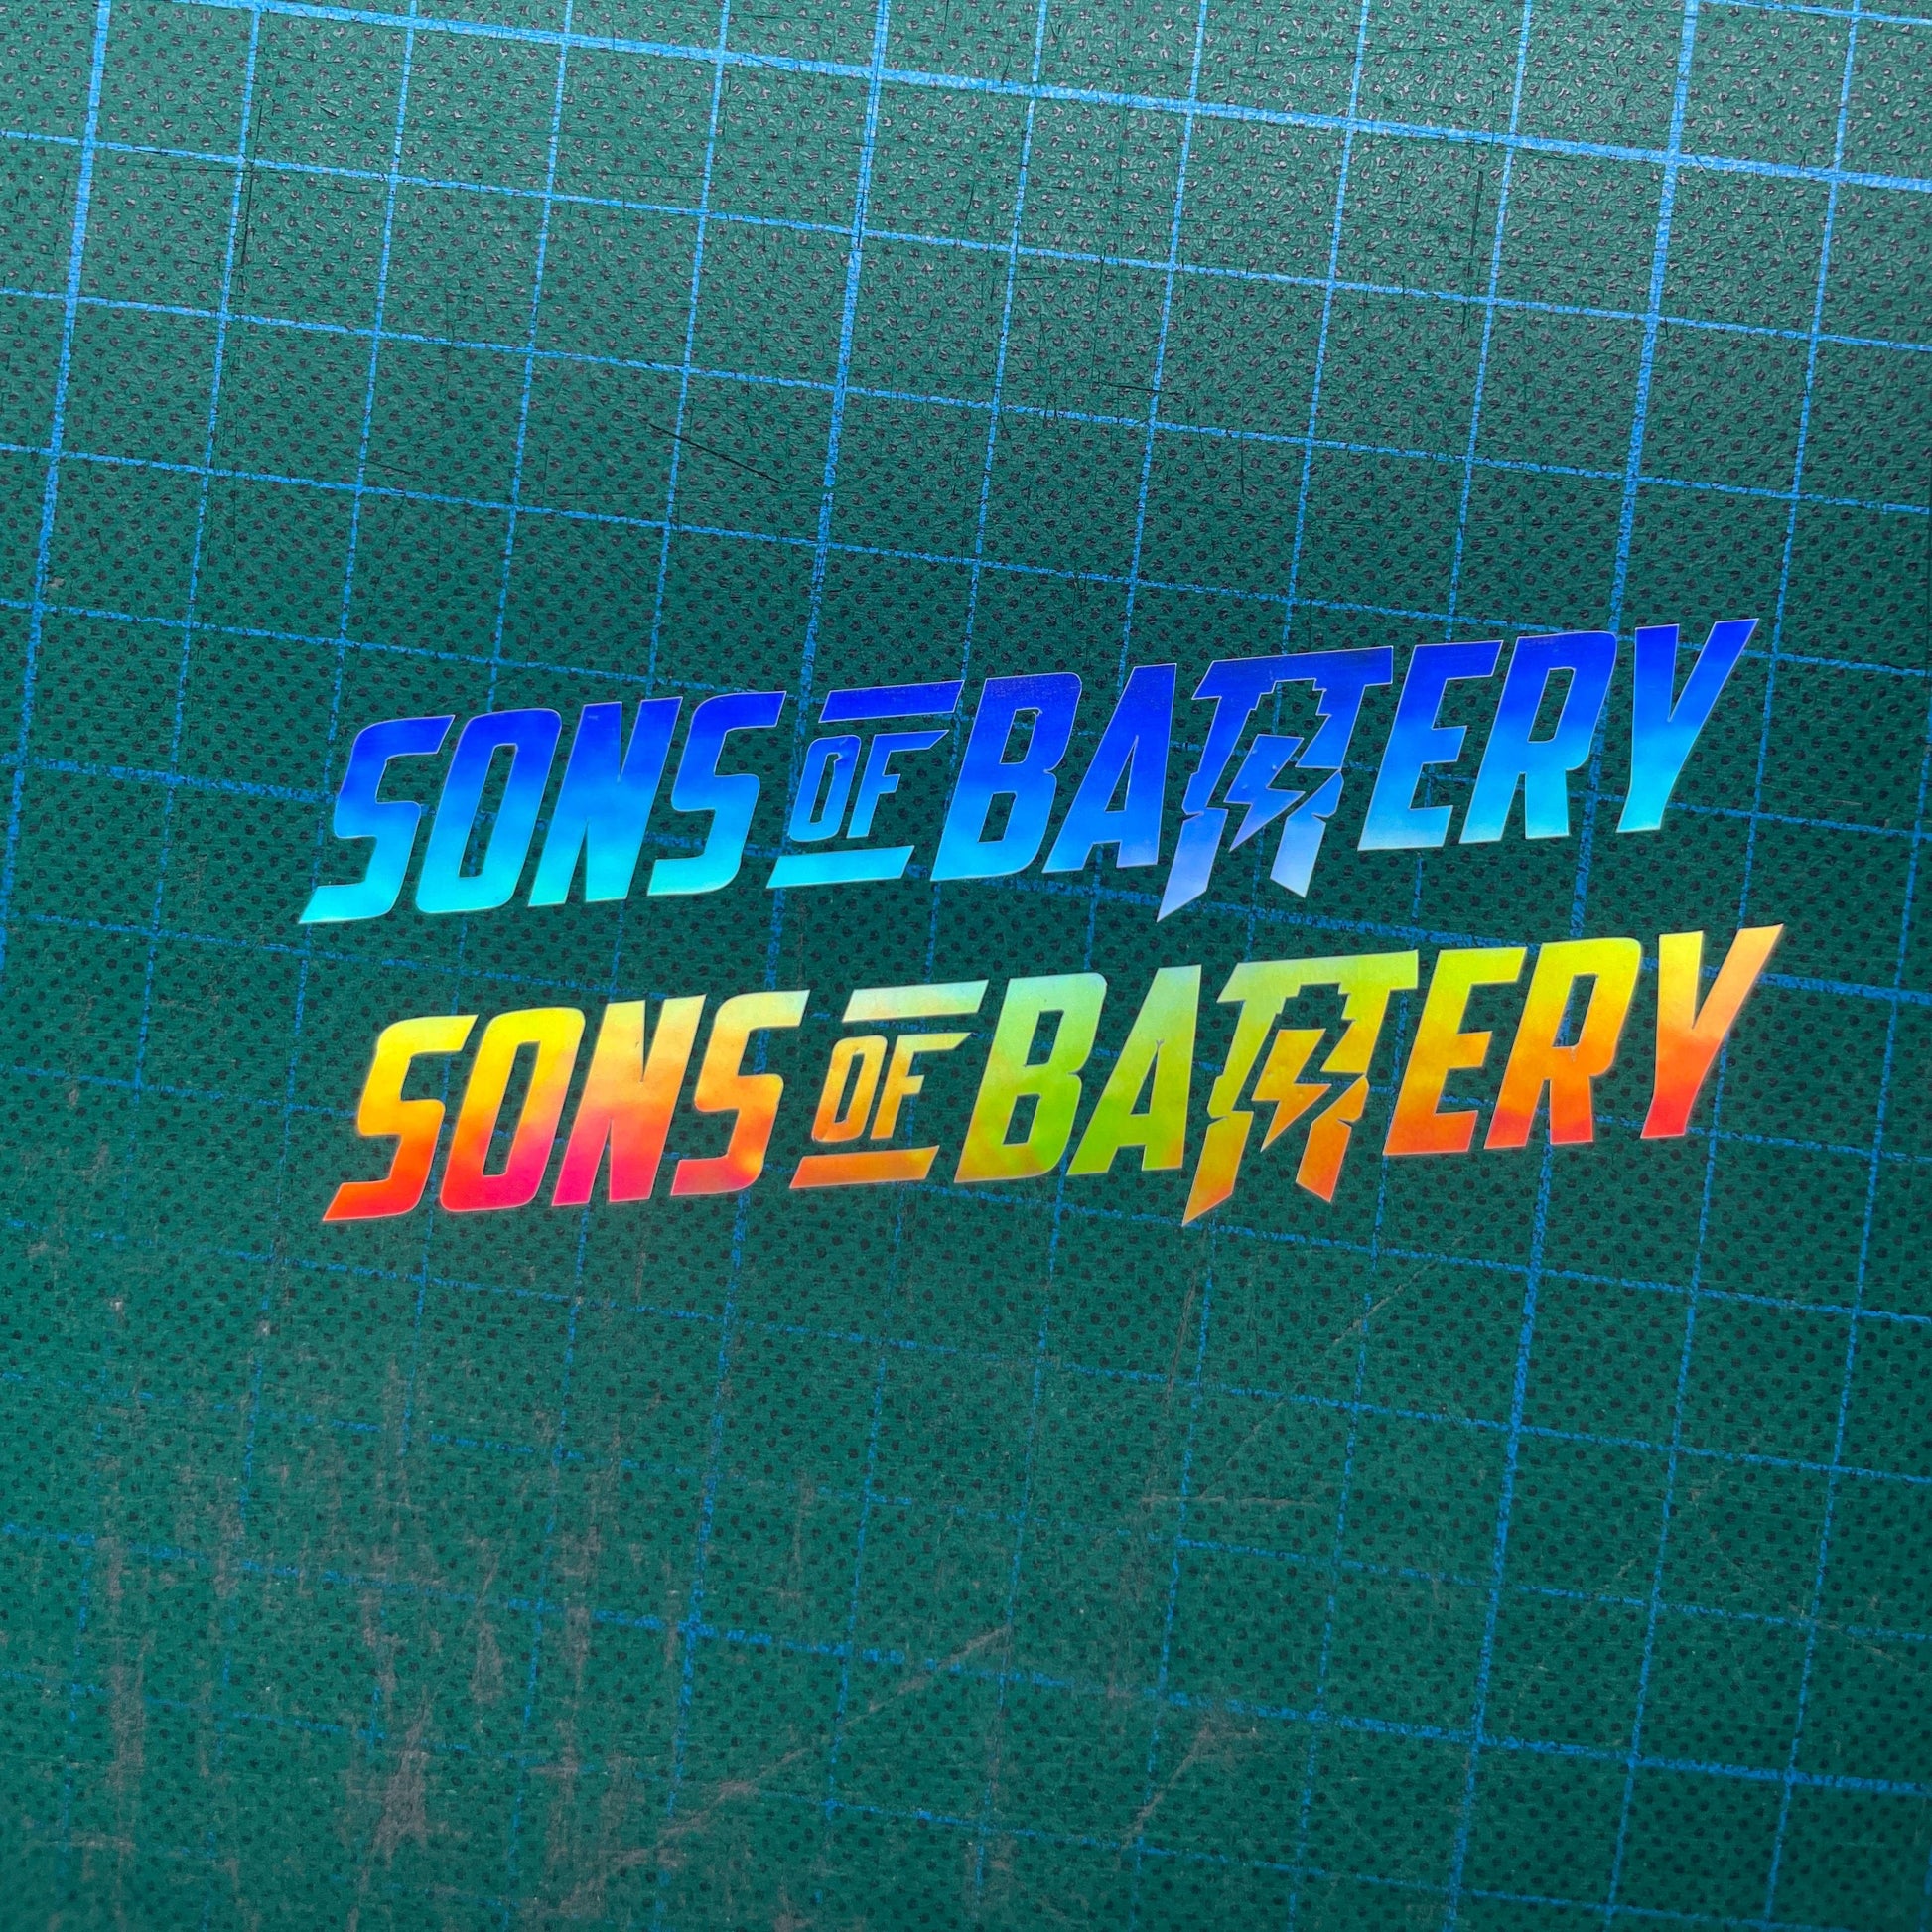 Sons of Battery - E-MTB Brand & Community Folien Sons of Battery - Schriftzug Modern E-Bike-Community